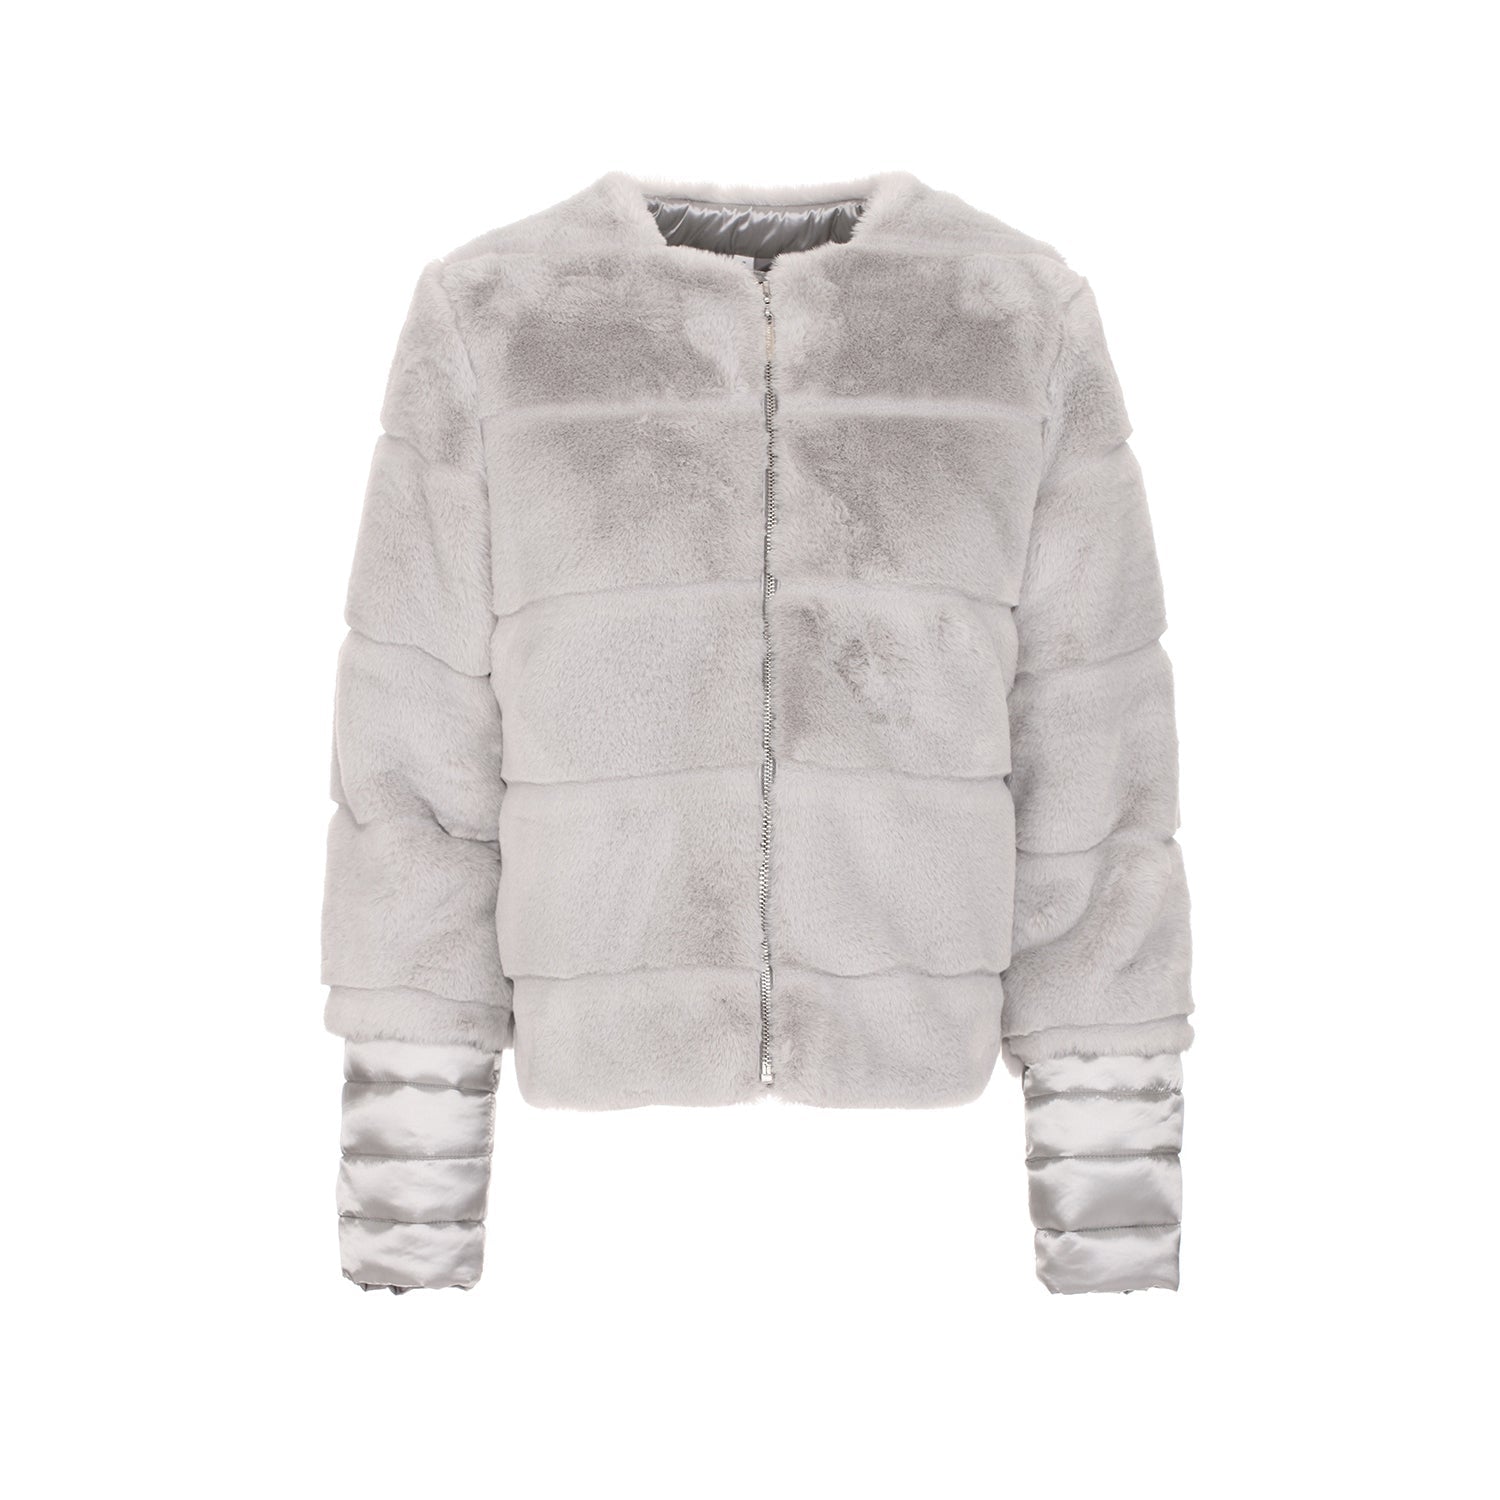 Maison Espin Gray Polyester Jackets & Coat - Fizigo